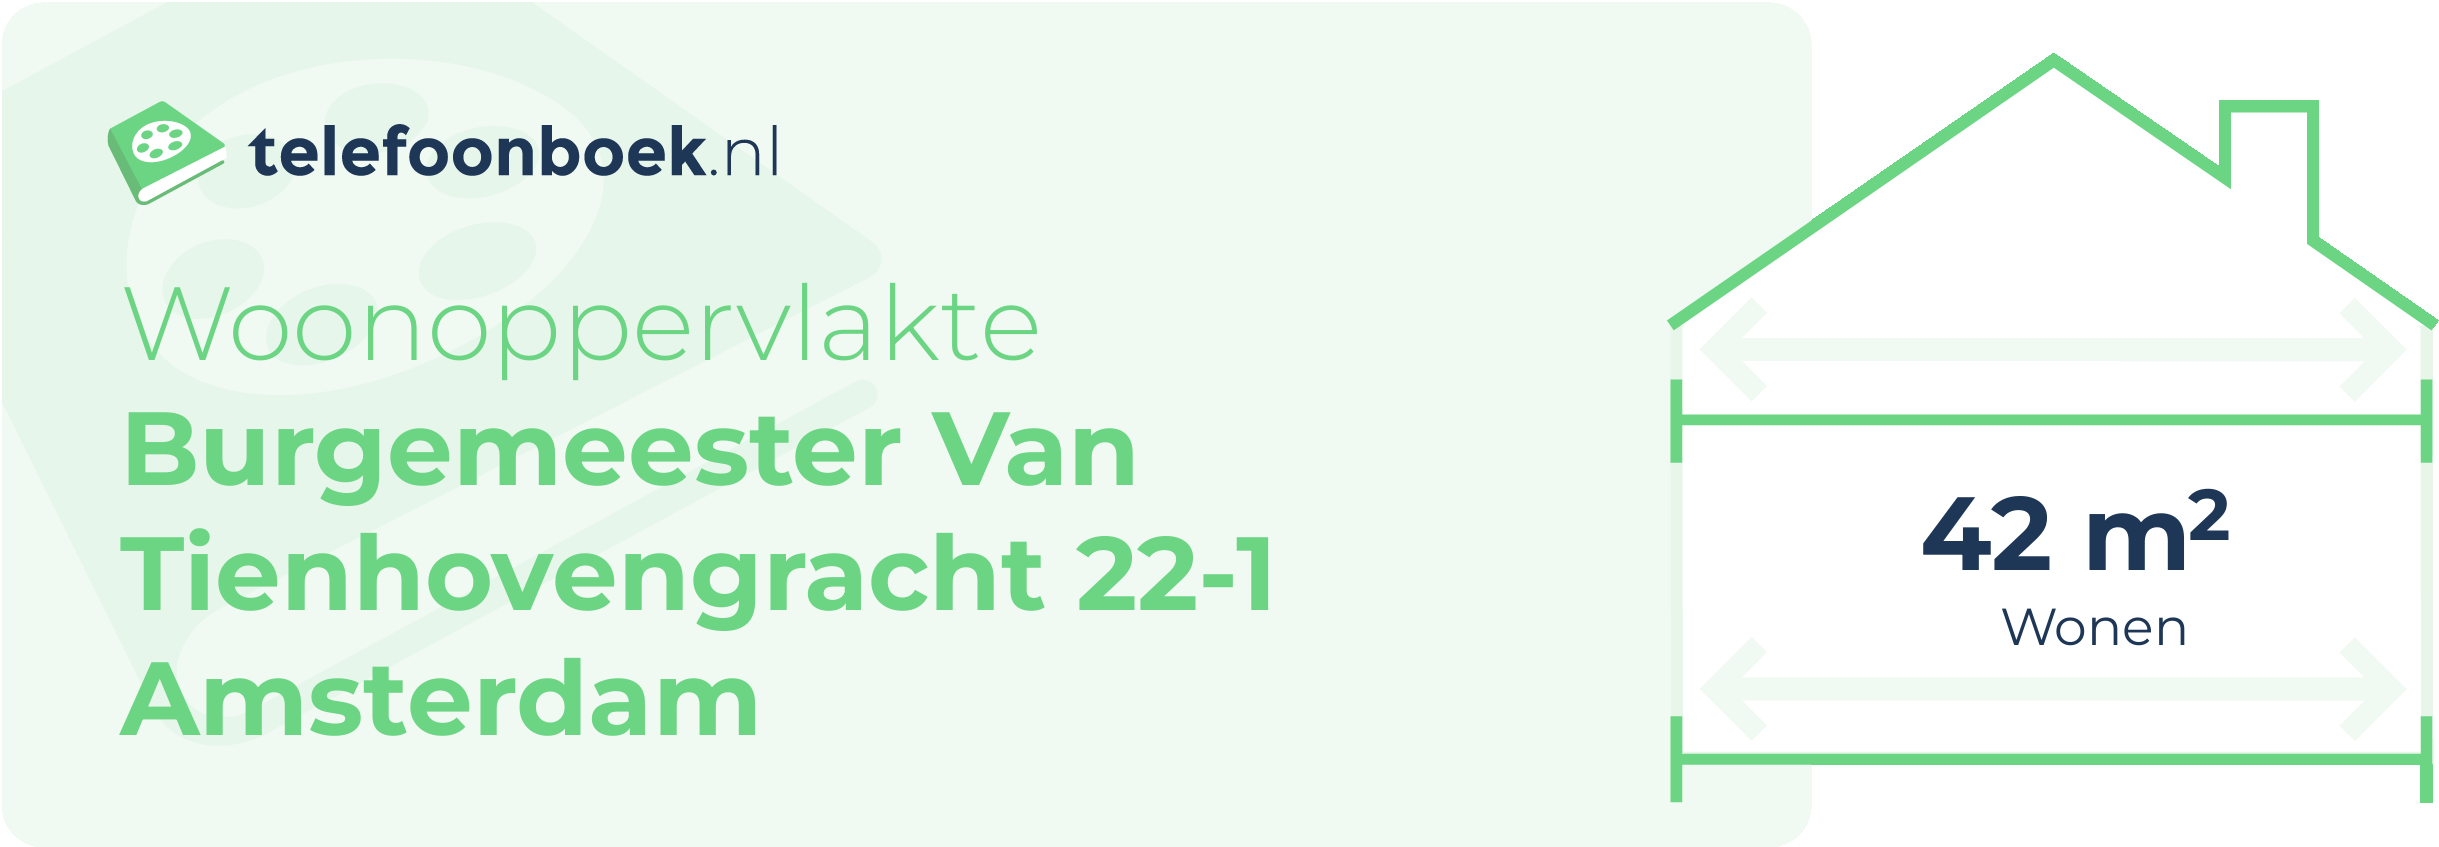 Woonoppervlakte Burgemeester Van Tienhovengracht 22-1 Amsterdam